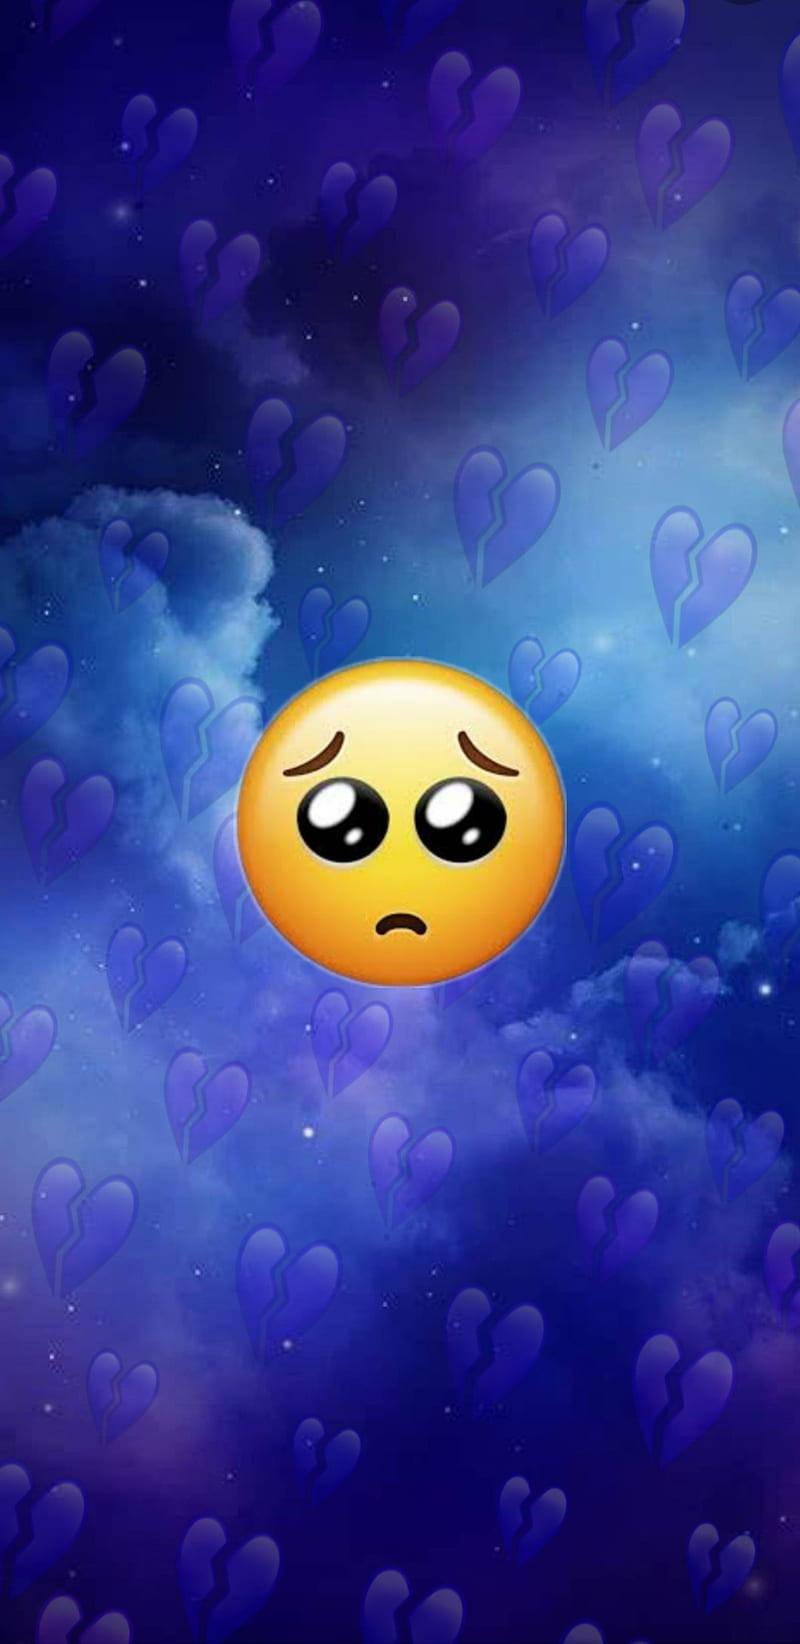 Sad Emoji With Broken Hearts In The Sky